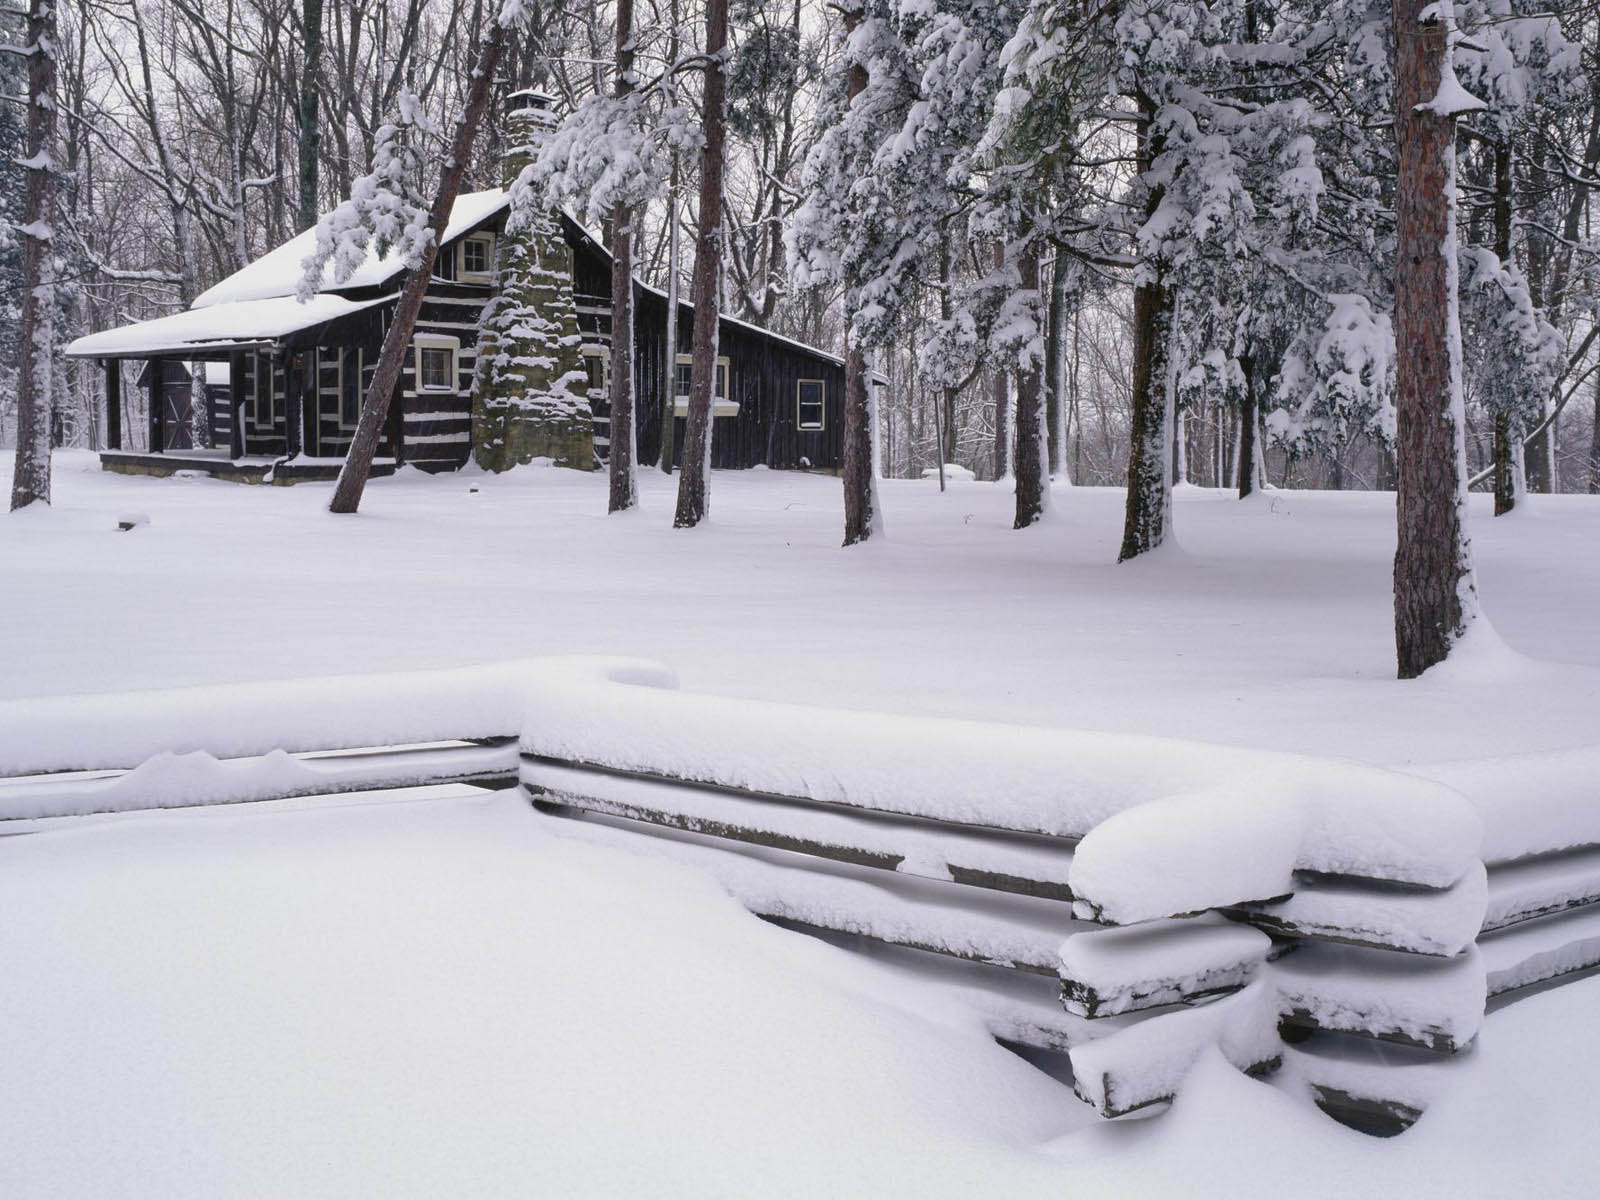 fond d'écran de neige gratuit,neige,hiver,gelé,arbre,cabane en rondins